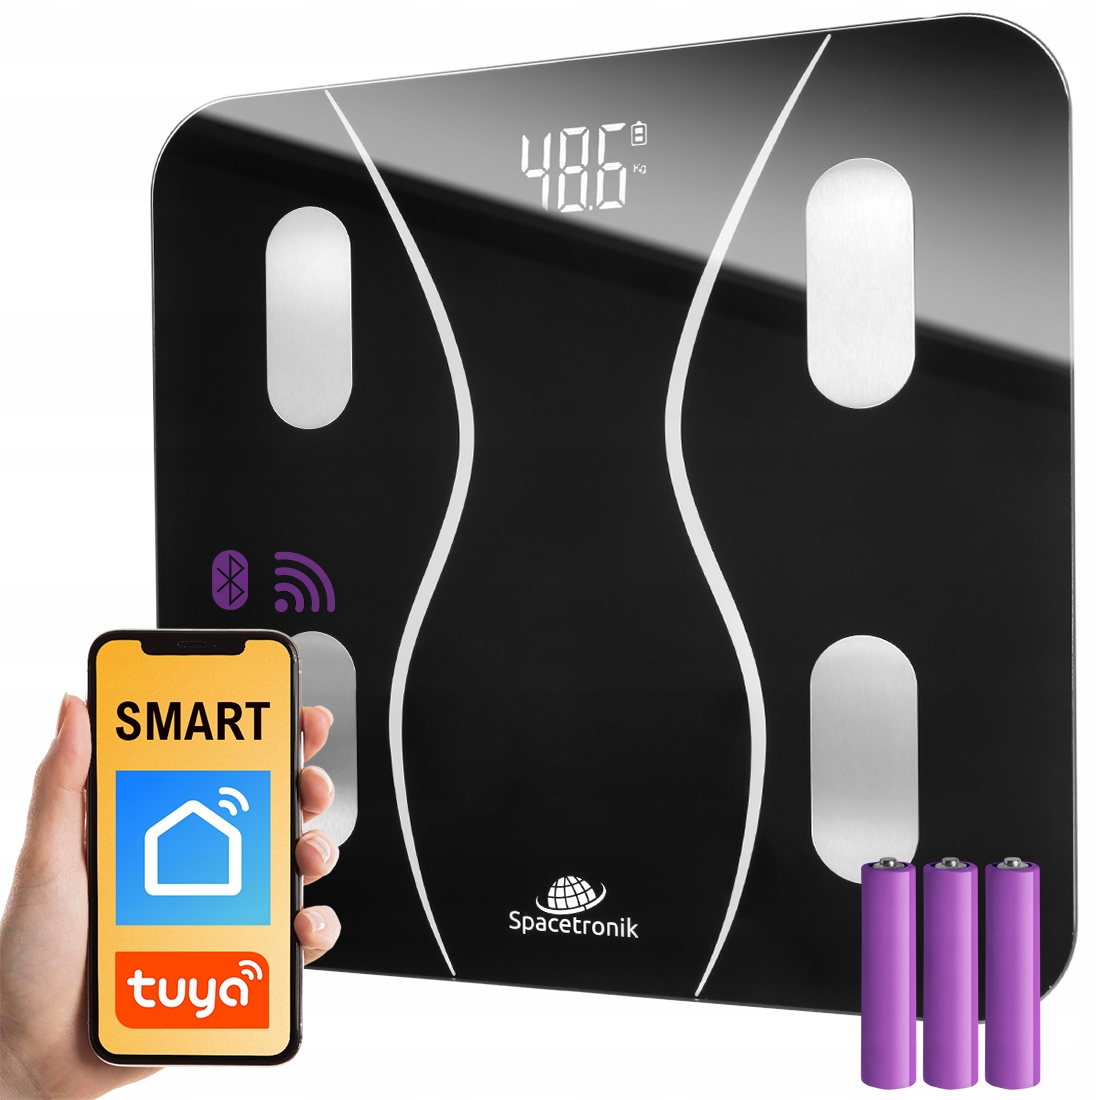 Koupelnová váha Smart BMI 17 funkcí WiFi BT TUYA aplikace do telefonu